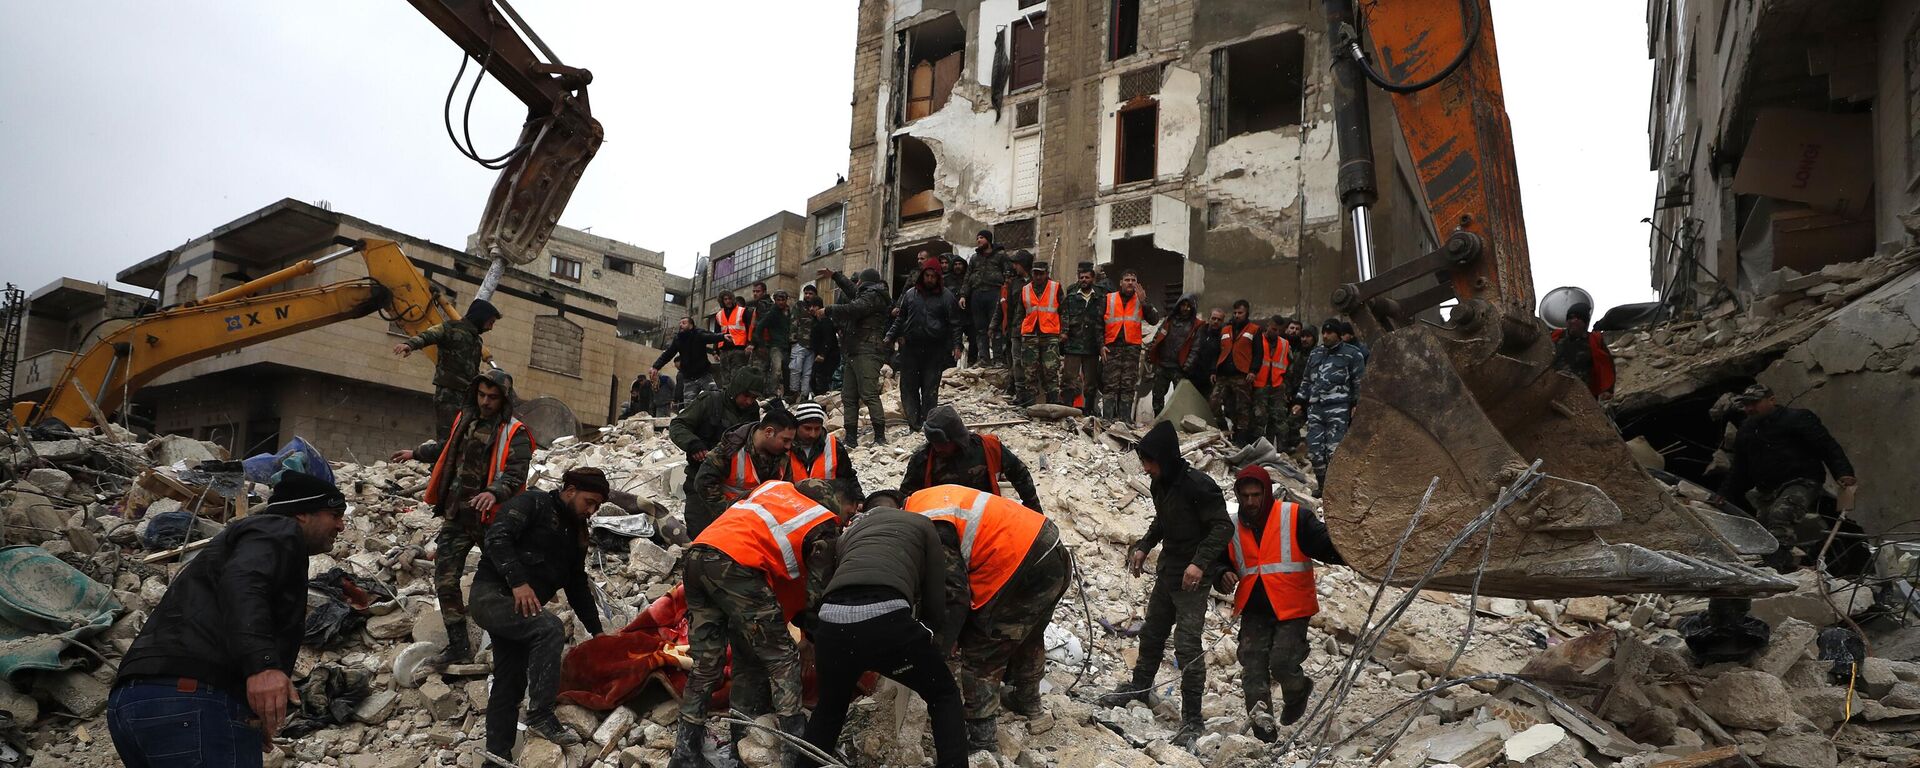 Спасиоци траже преживеле у срушеној згради након земљотреса у сиријској Хами - Sputnik Србија, 1920, 06.02.2023